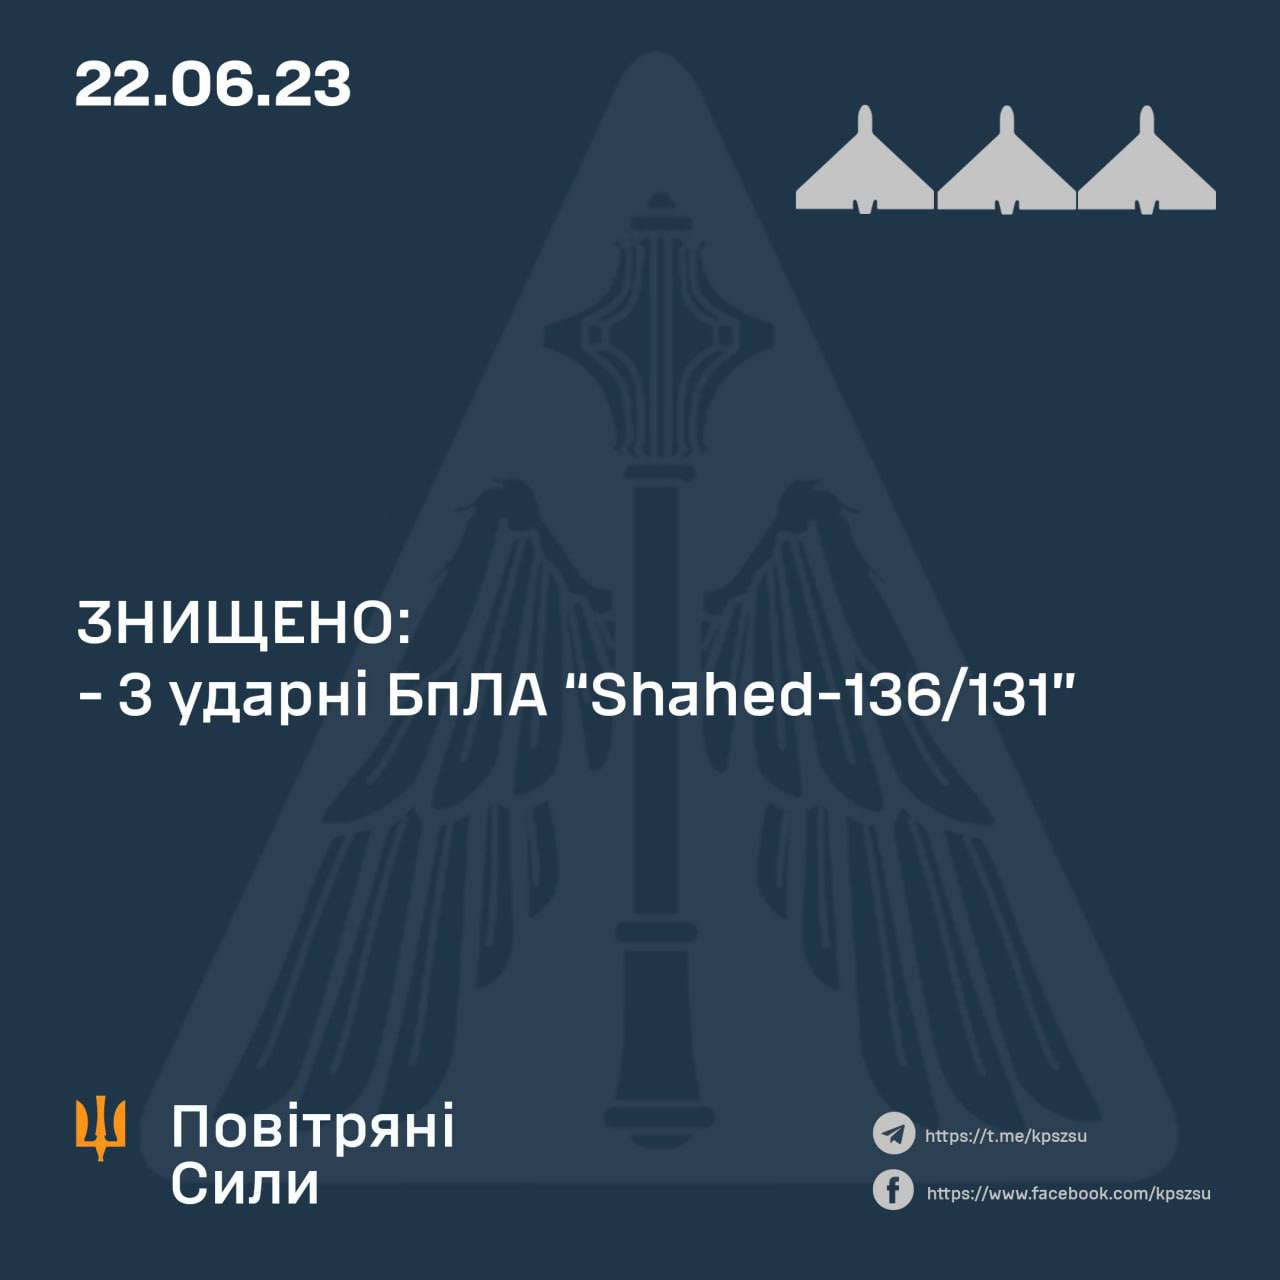 ❗️Вночі росіяни атакували Україну трьома ракетами Х-22, трьома Х-47 "Кинджал" та чотирма дронами "Shahed", - повідомили Повітряні сили